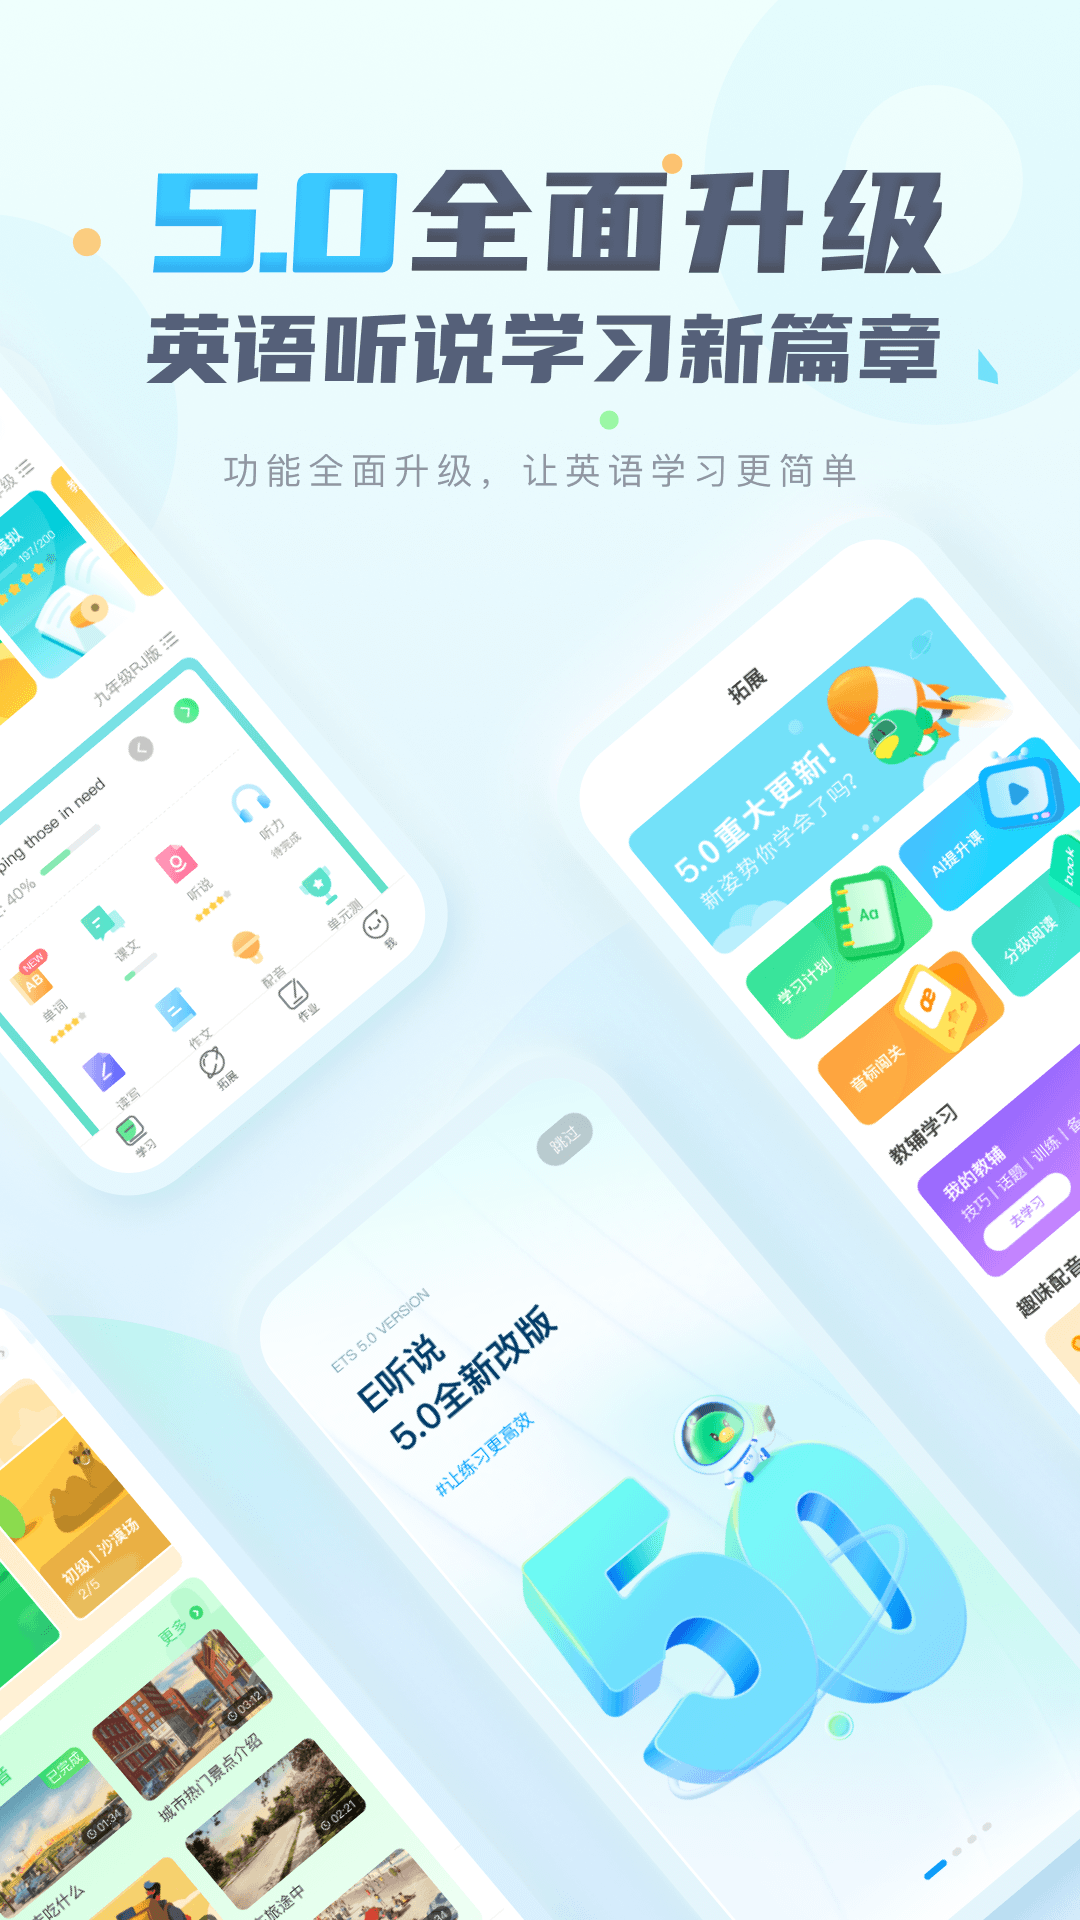 讯飞e听说中学手机端 v5.7.2 官方安卓最新版4